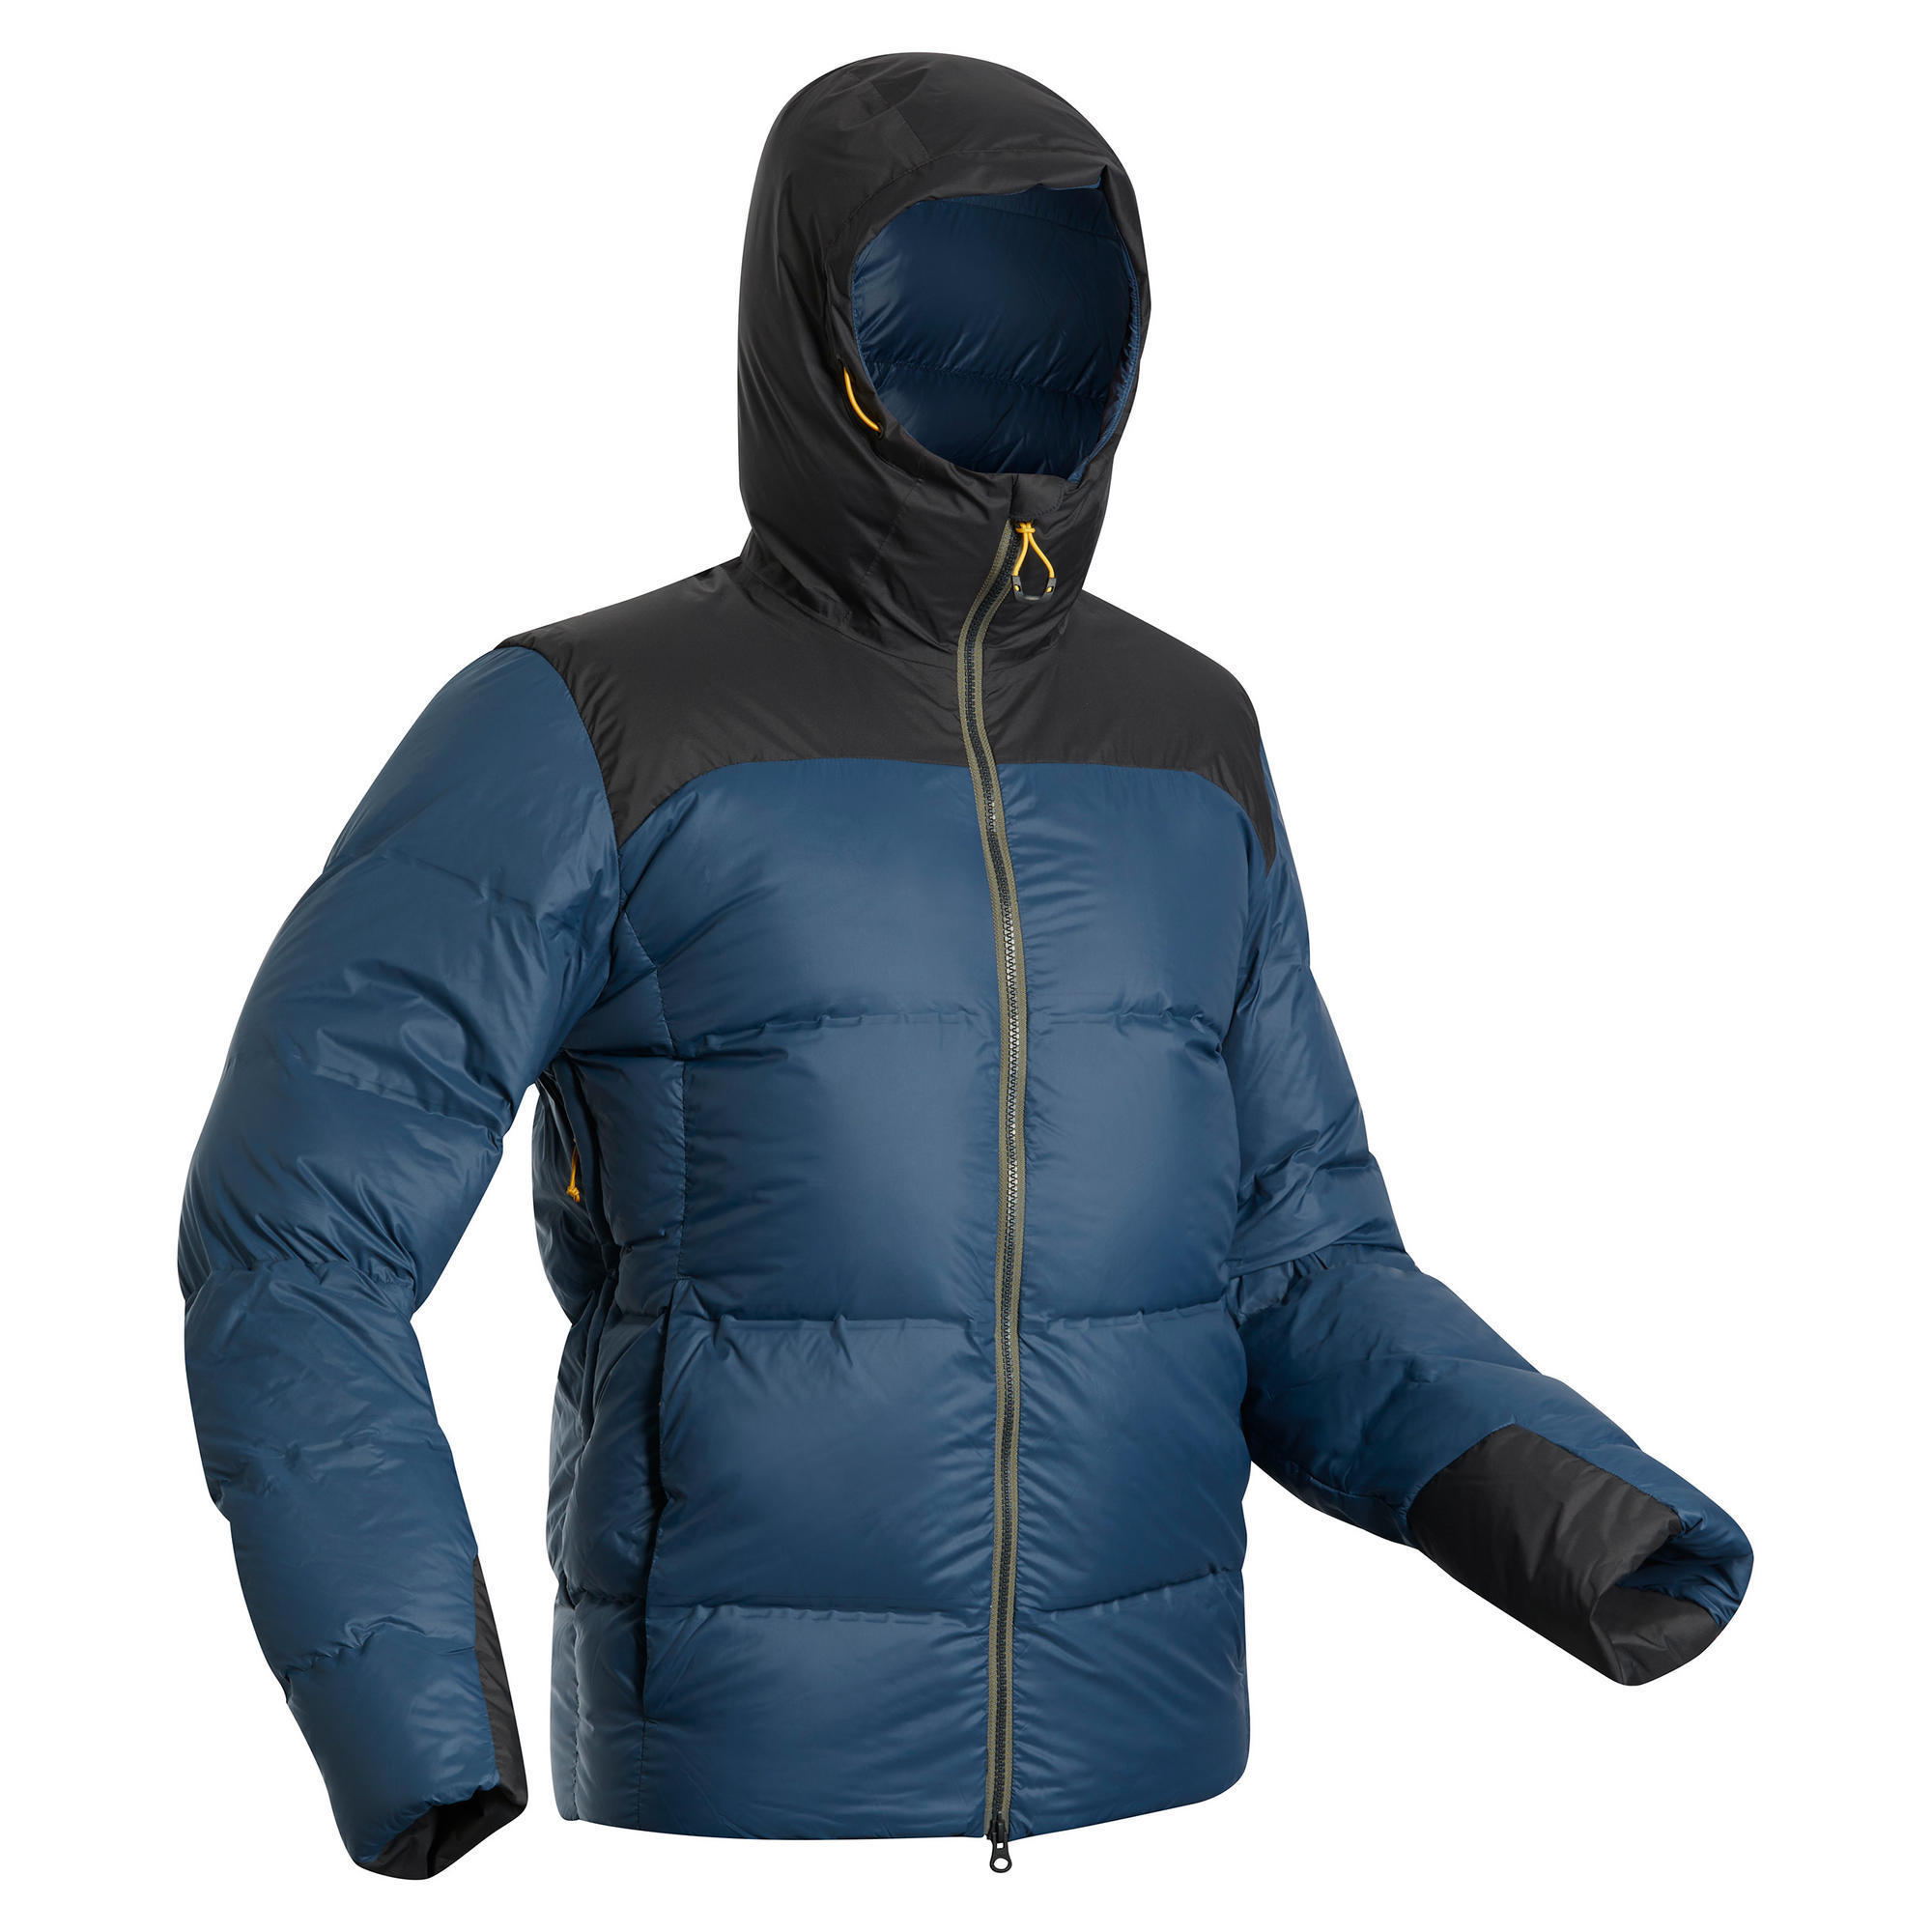 Men's Mountain Trekking Down Jacket - Comfort -18°C - TREK 900 FORCLAZ ...